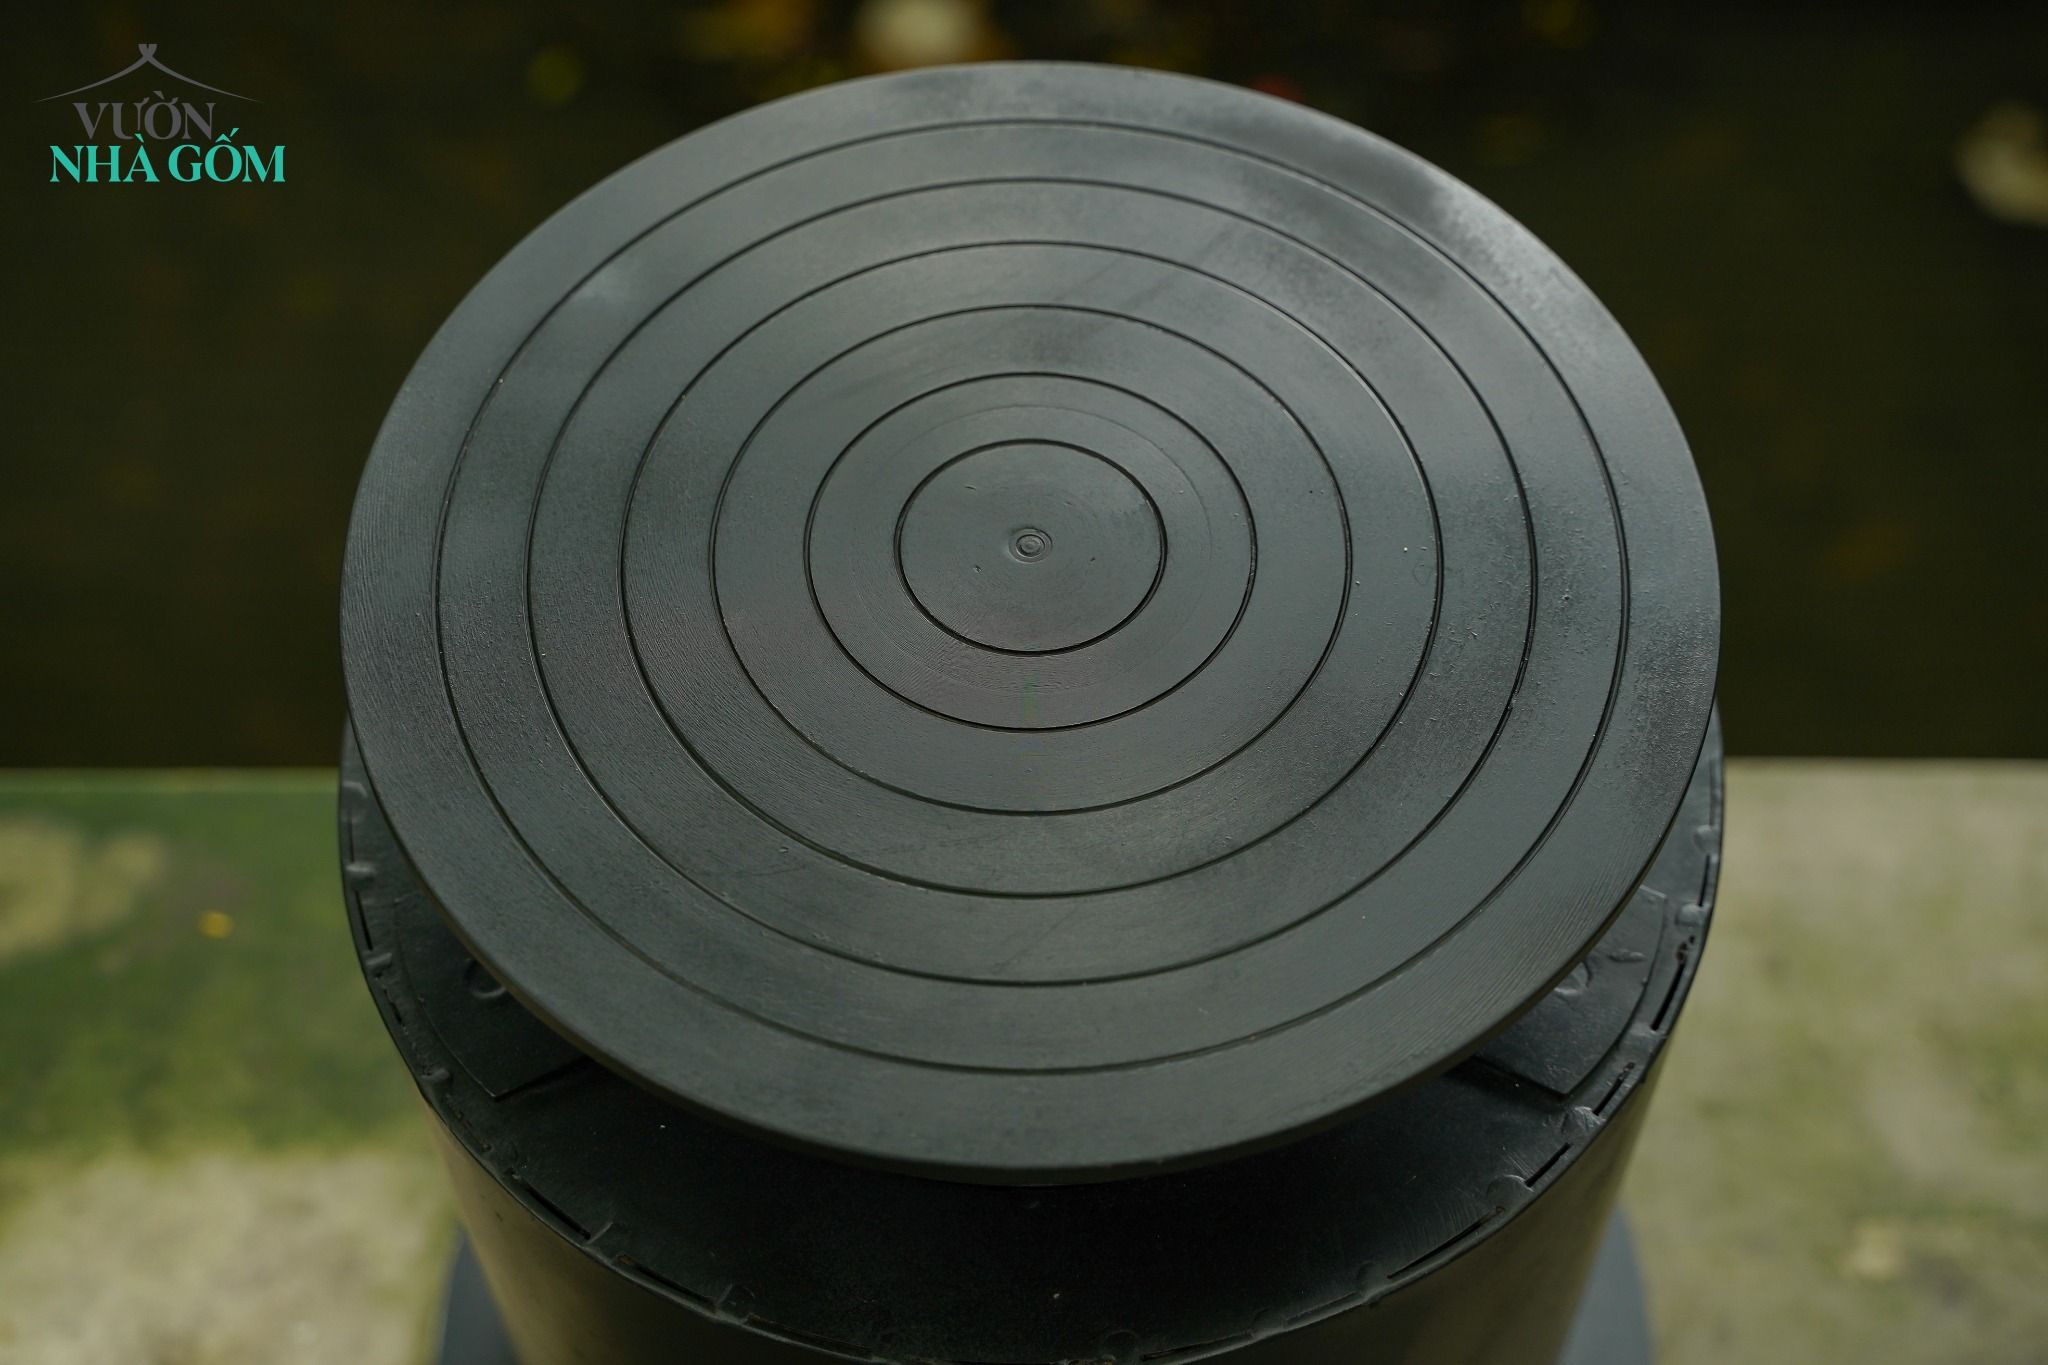  Bàn xoay gốm bằng điện, Model BXD05, dành cho người nhà nghề làm gốm 